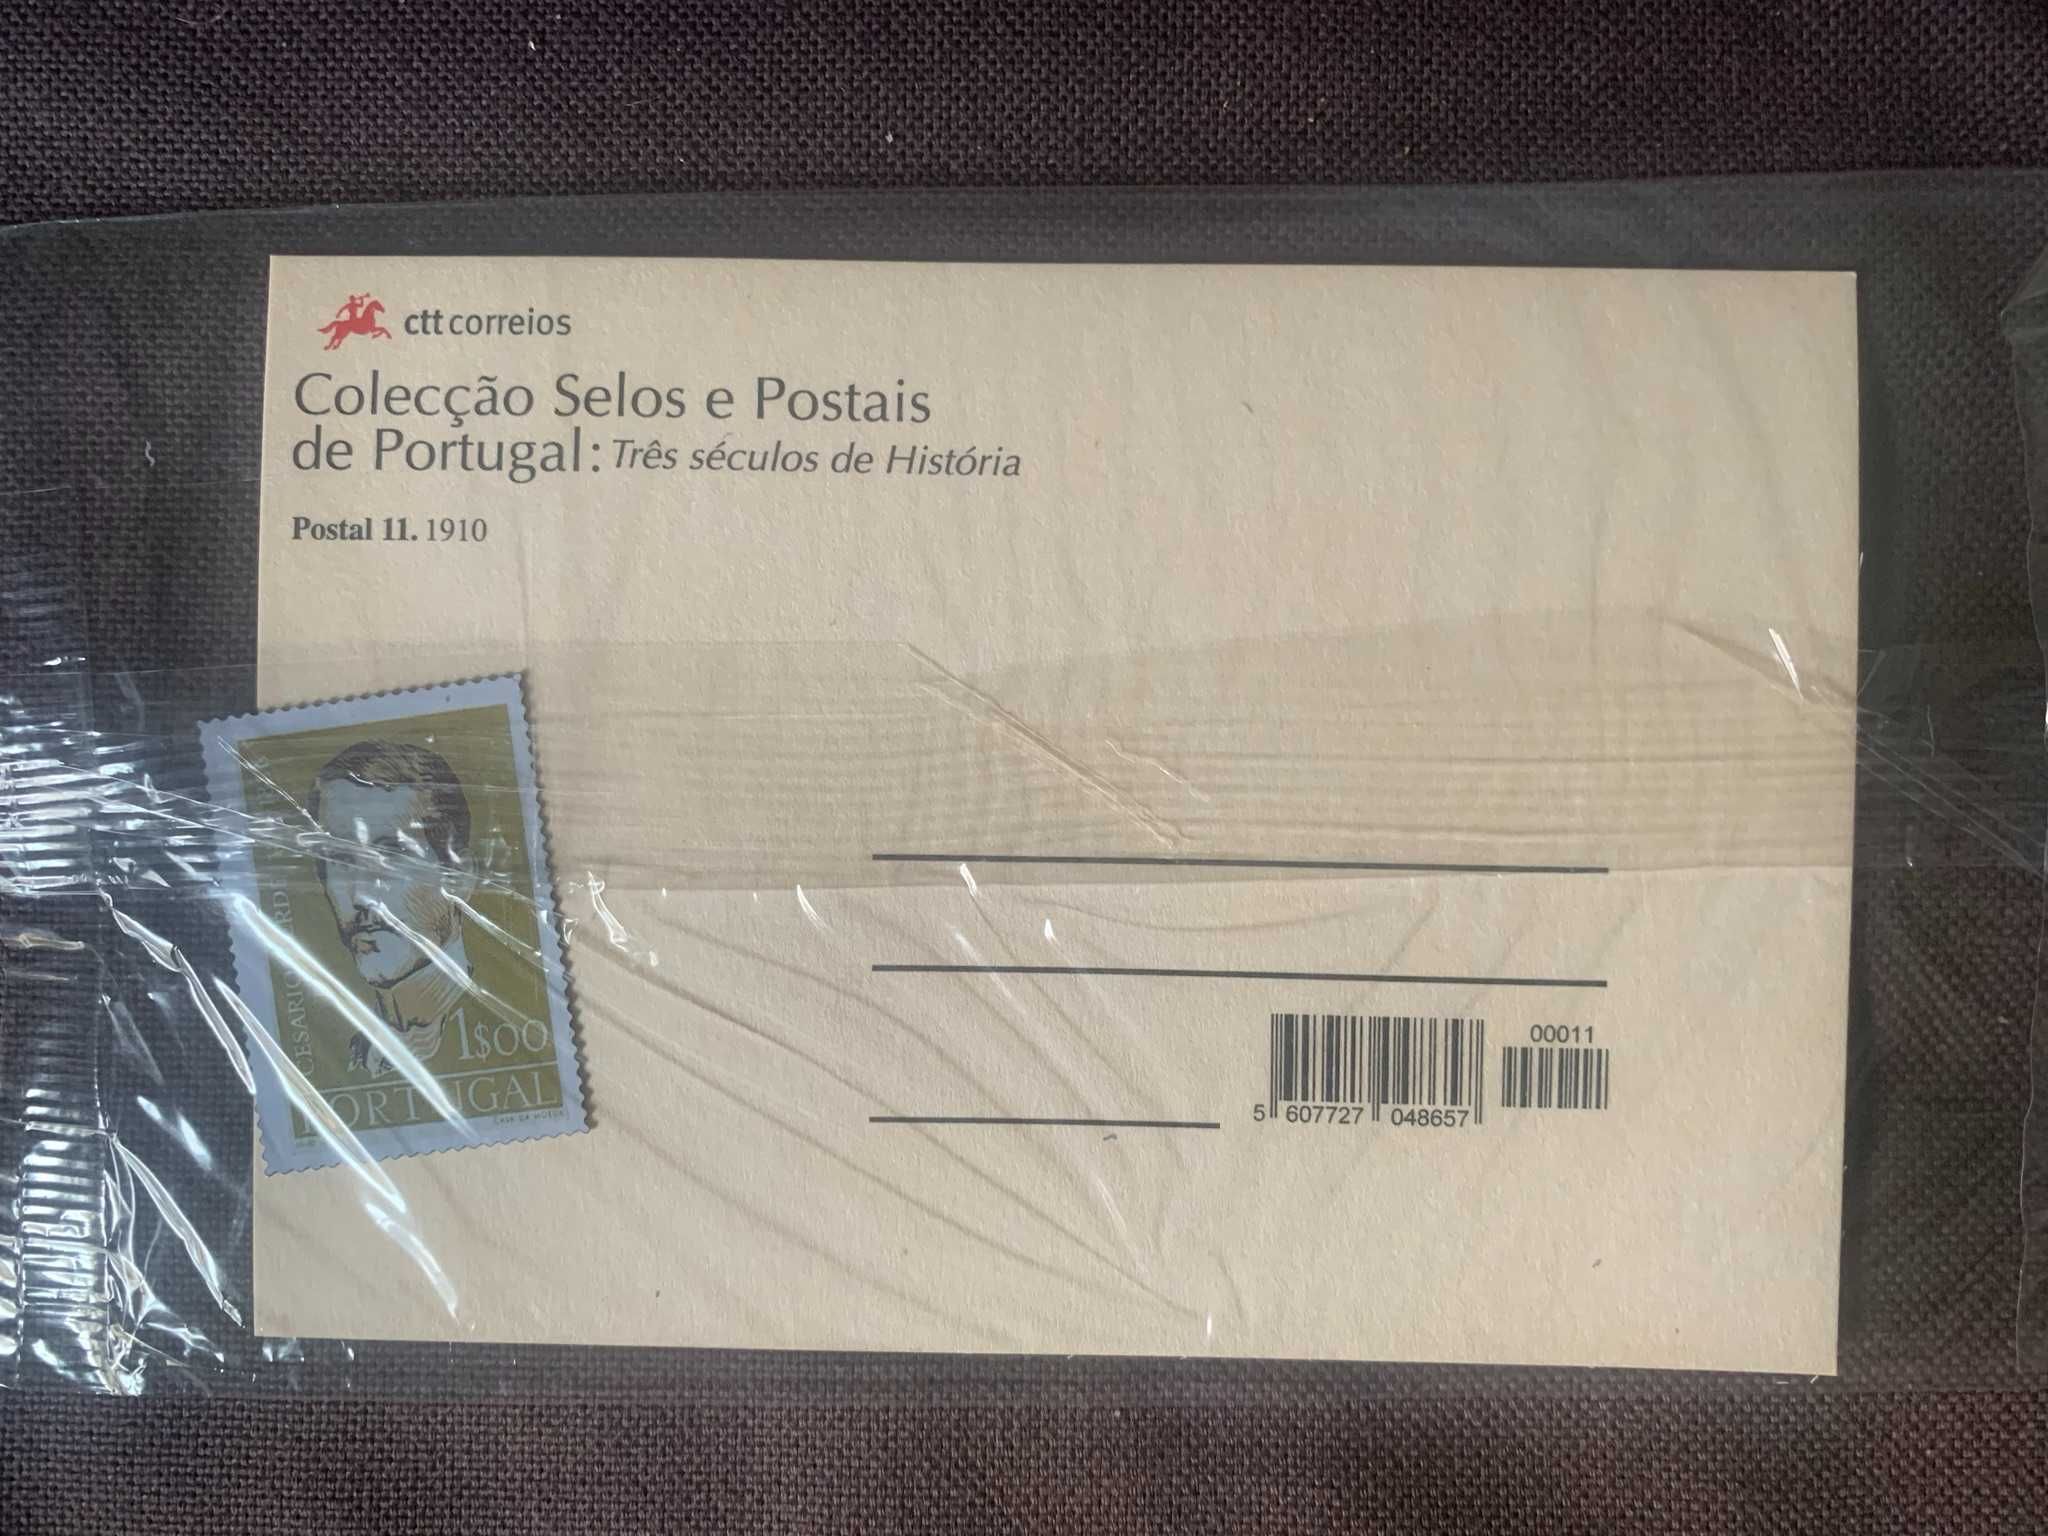 Coleção de Selos e postais de Portugal